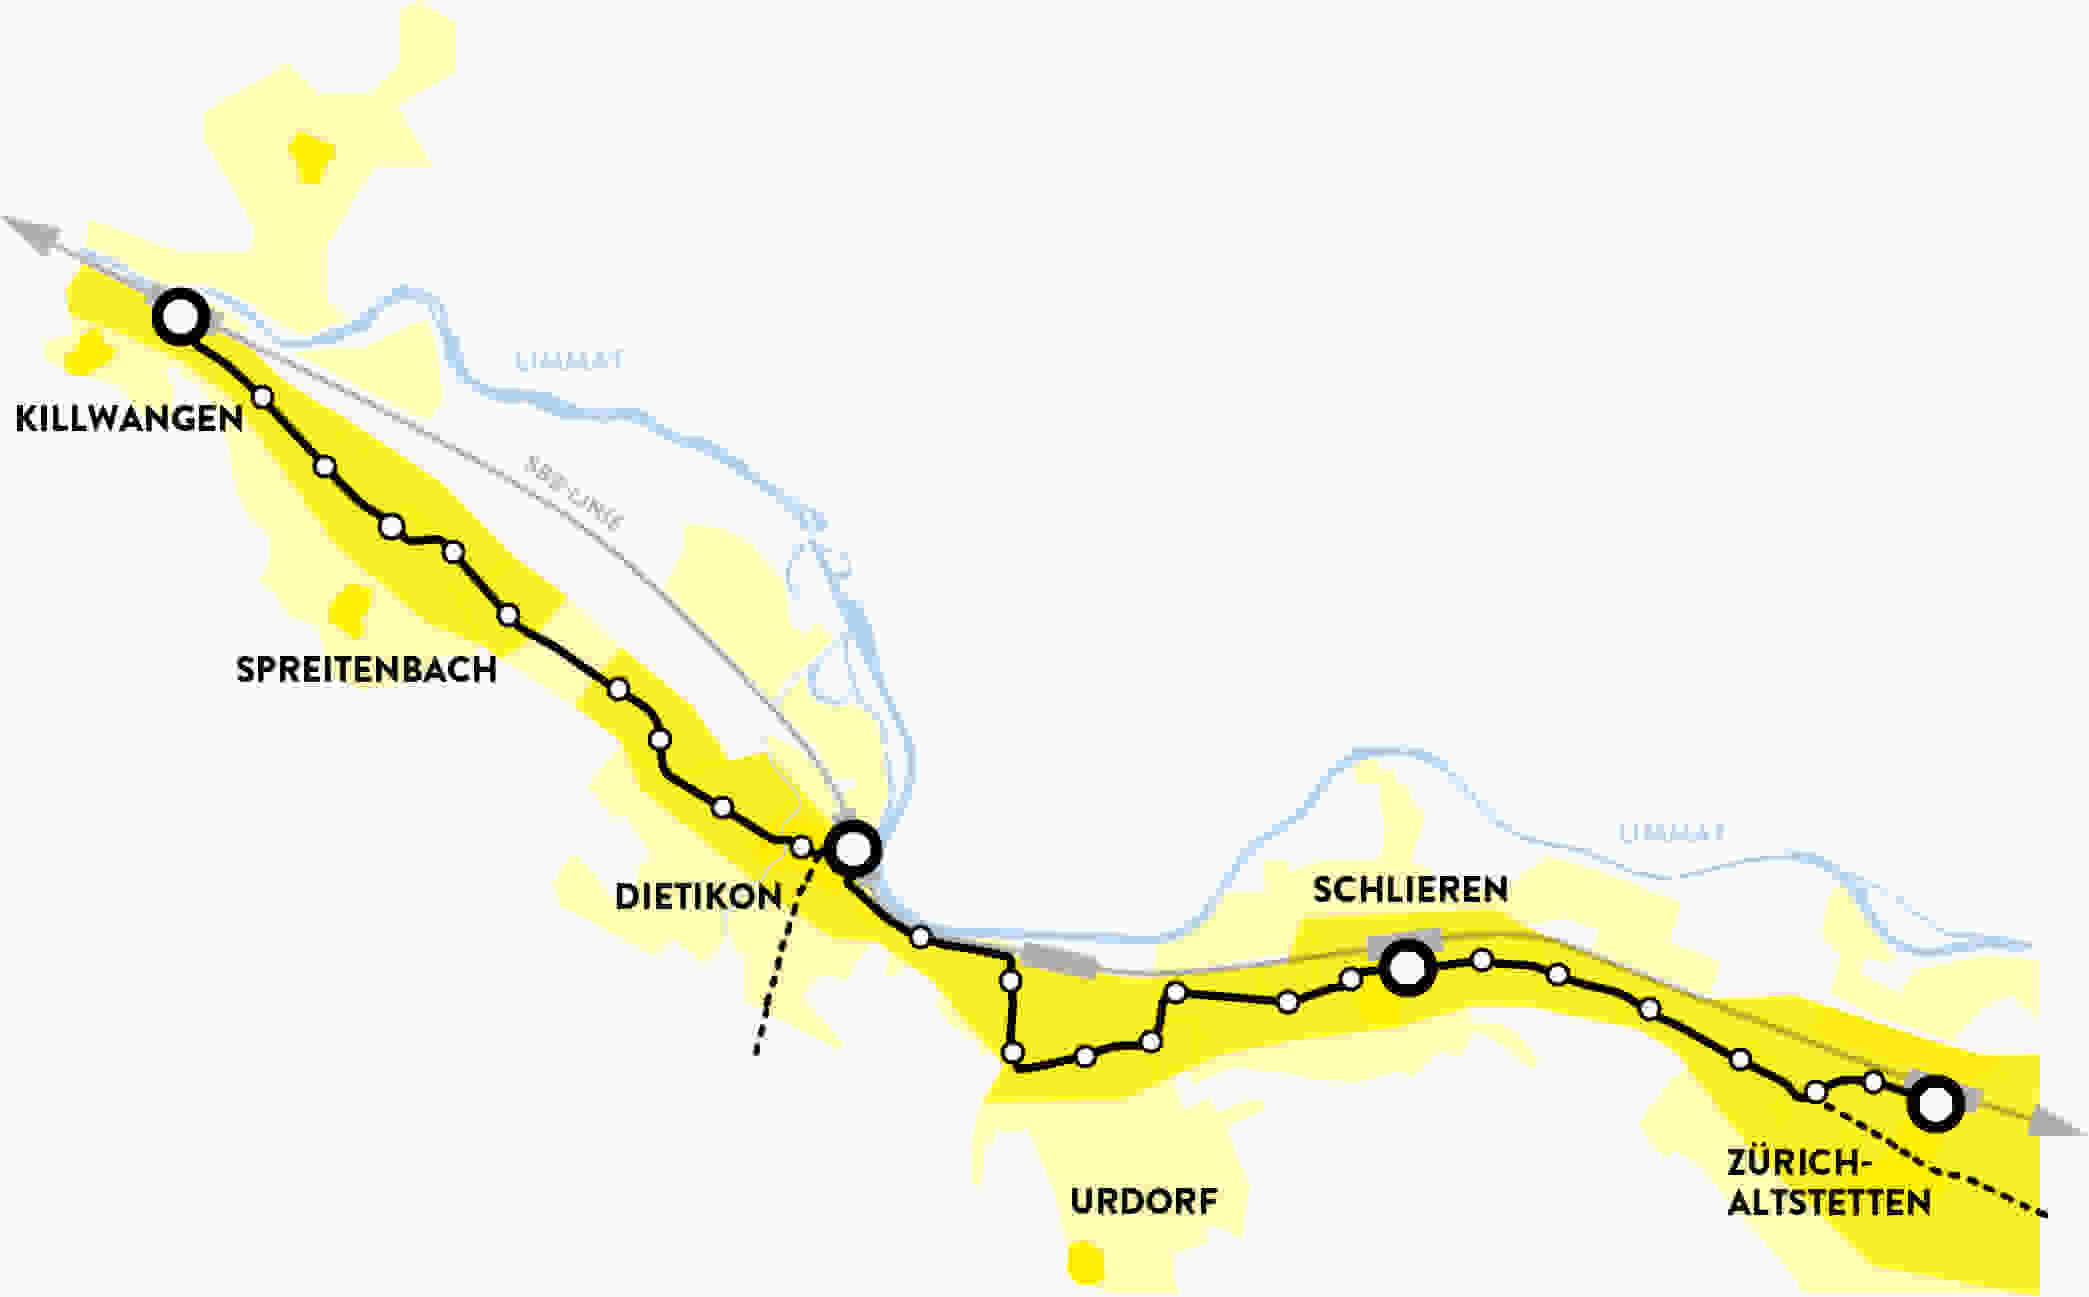 Linienführung Limmattalbahn dargestellt auf einer Karte.